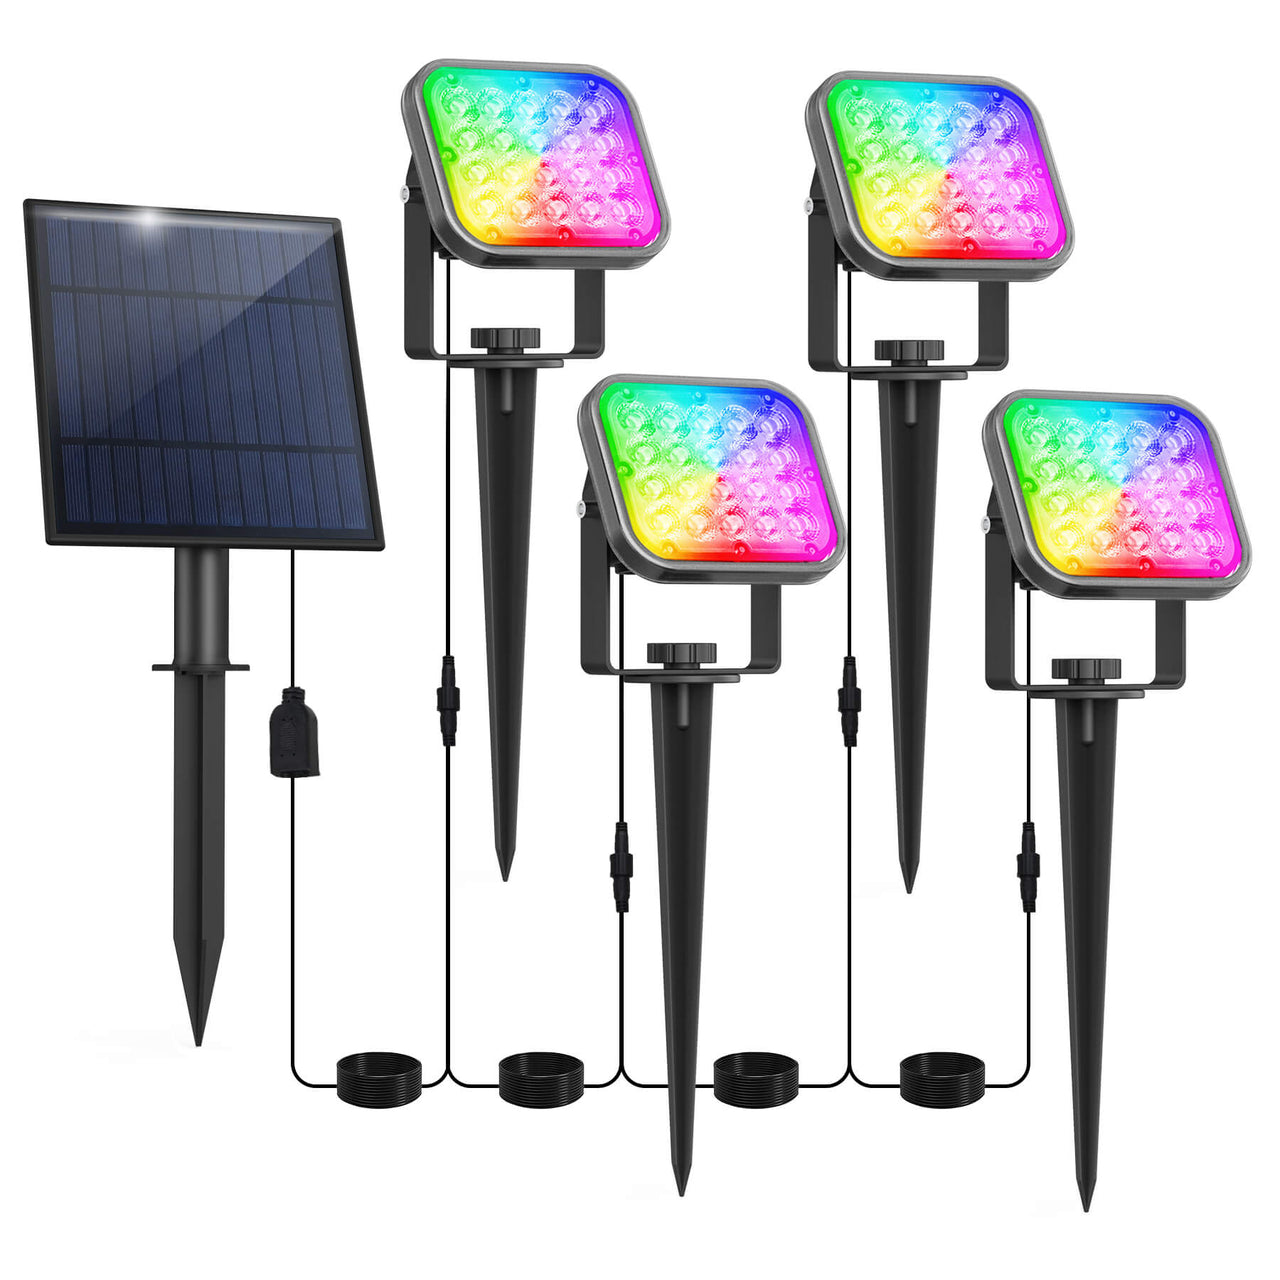 TSUN 20 LEDs Color Changing Solar Landscape Spotlights 4-in-1